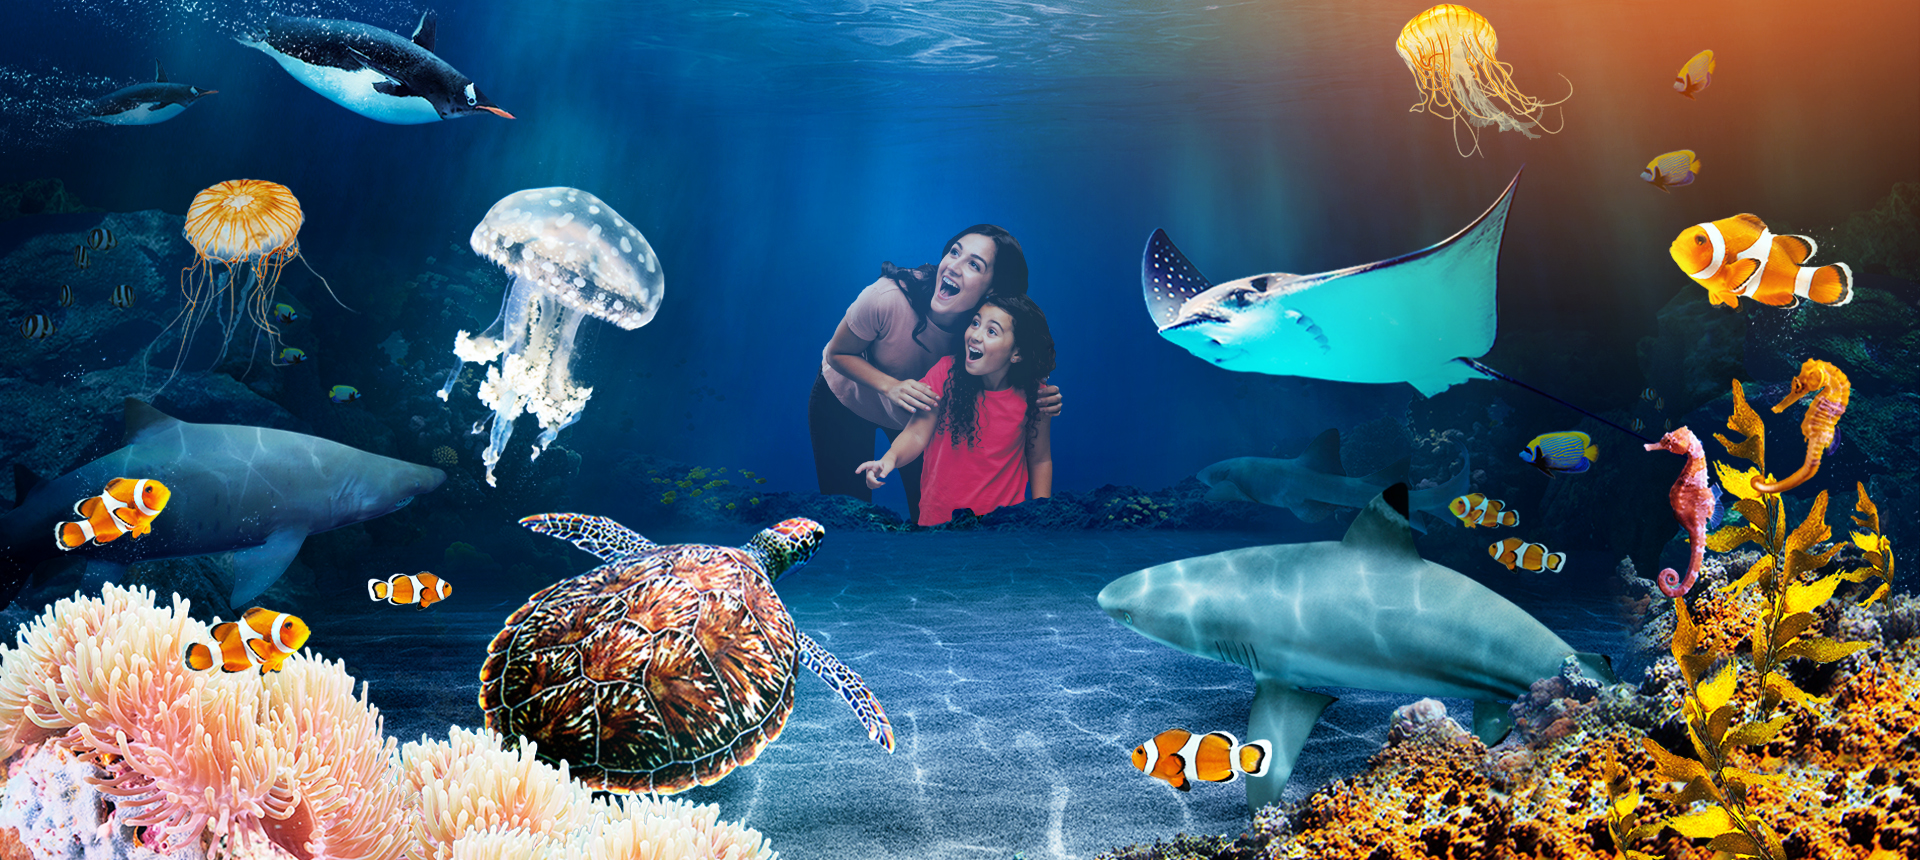 SEA LIFE Aquariums & Attractions | Official SEA LIFE website